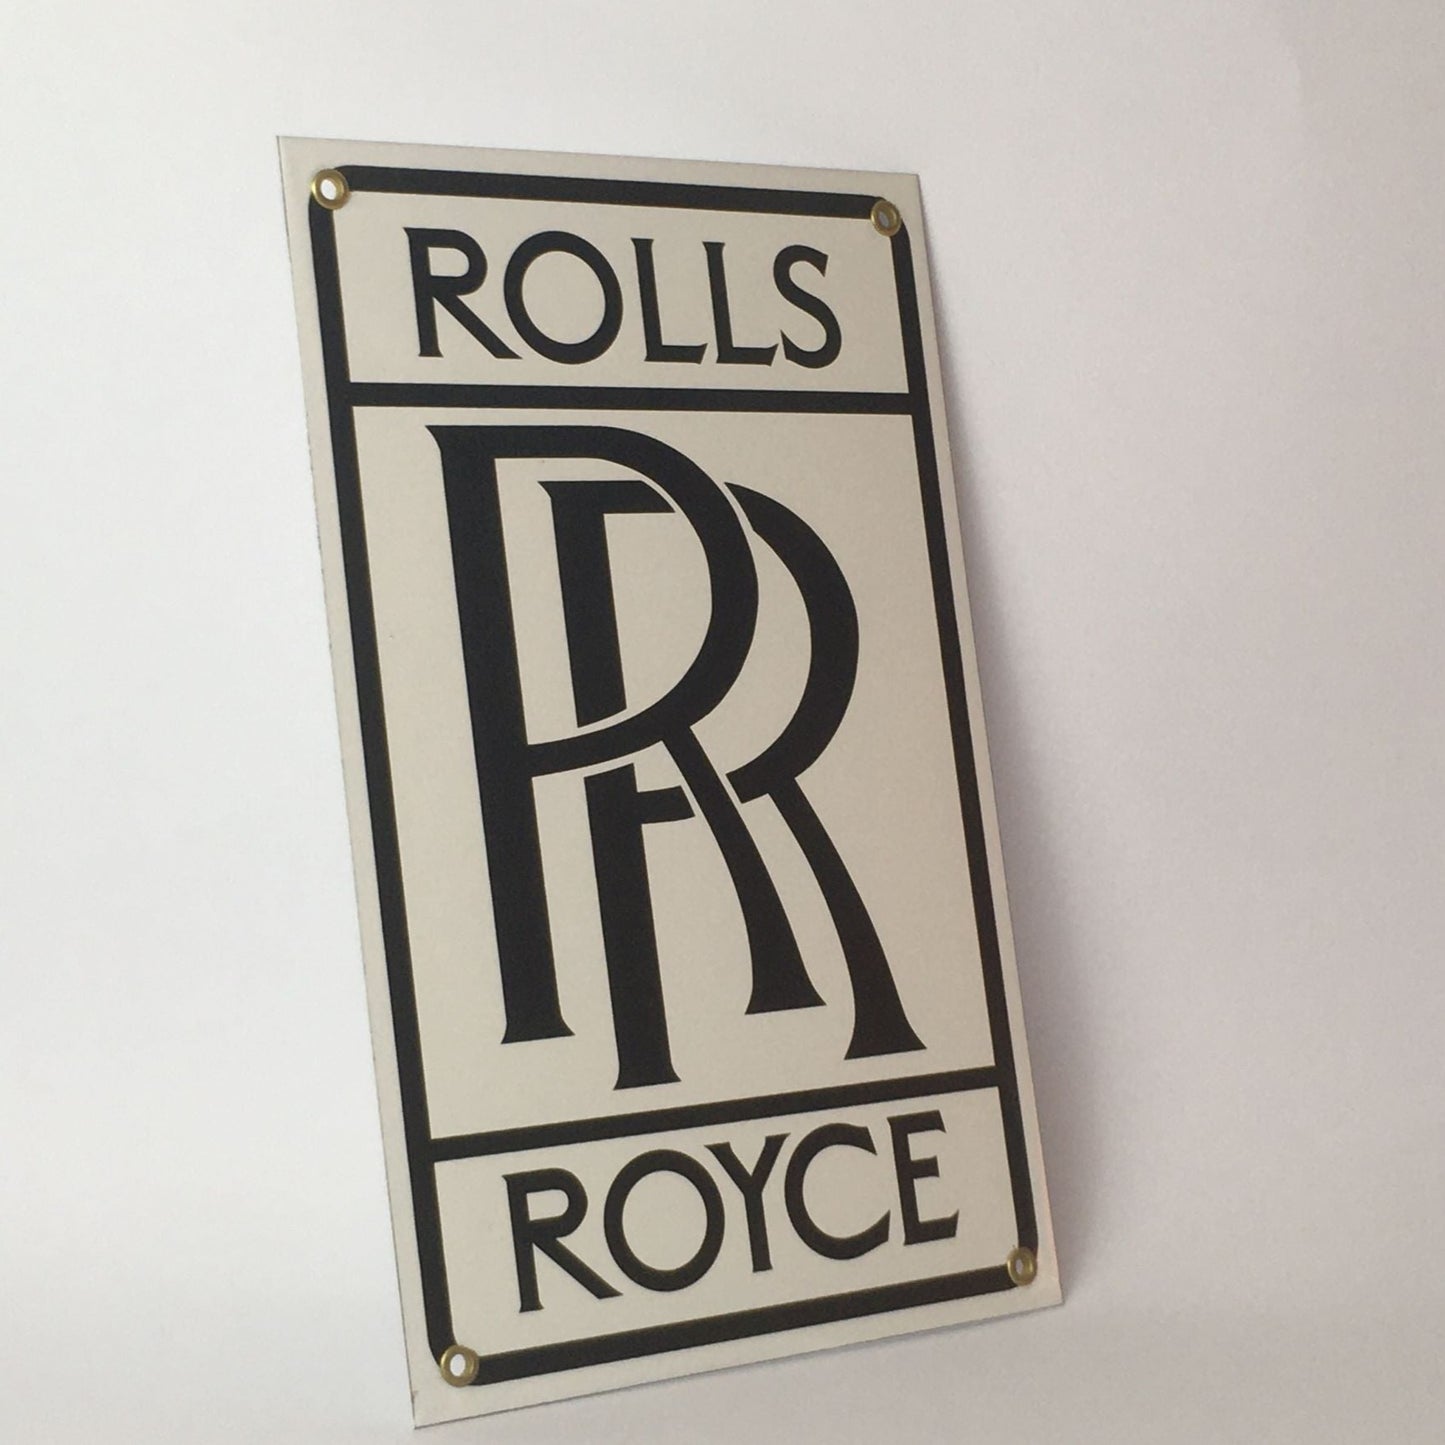 Rolls-Royce, Insegna in Metallo Smaltato con Stemma a Caratteri Neri - Raggi's Collectibles' Automotive Art